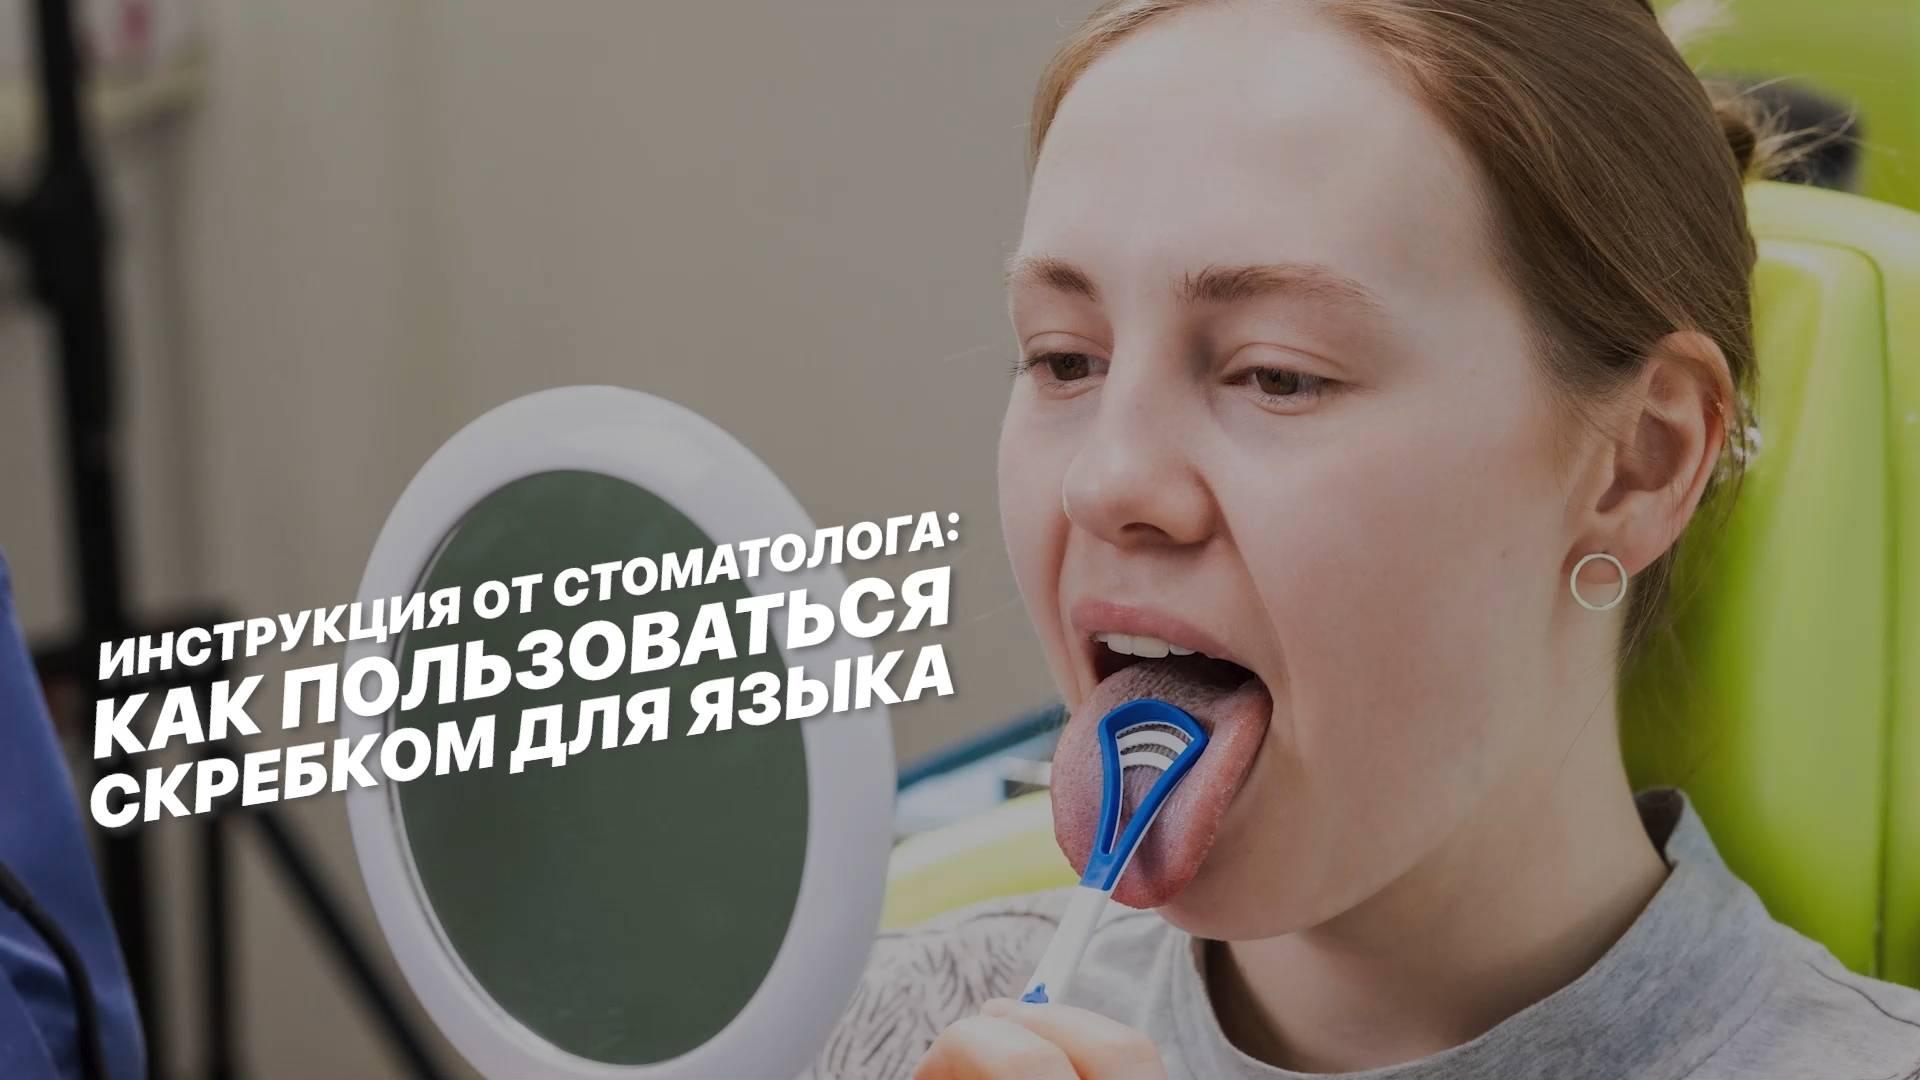 Инструкция от стоматолога: как пользоваться скребком для языка.